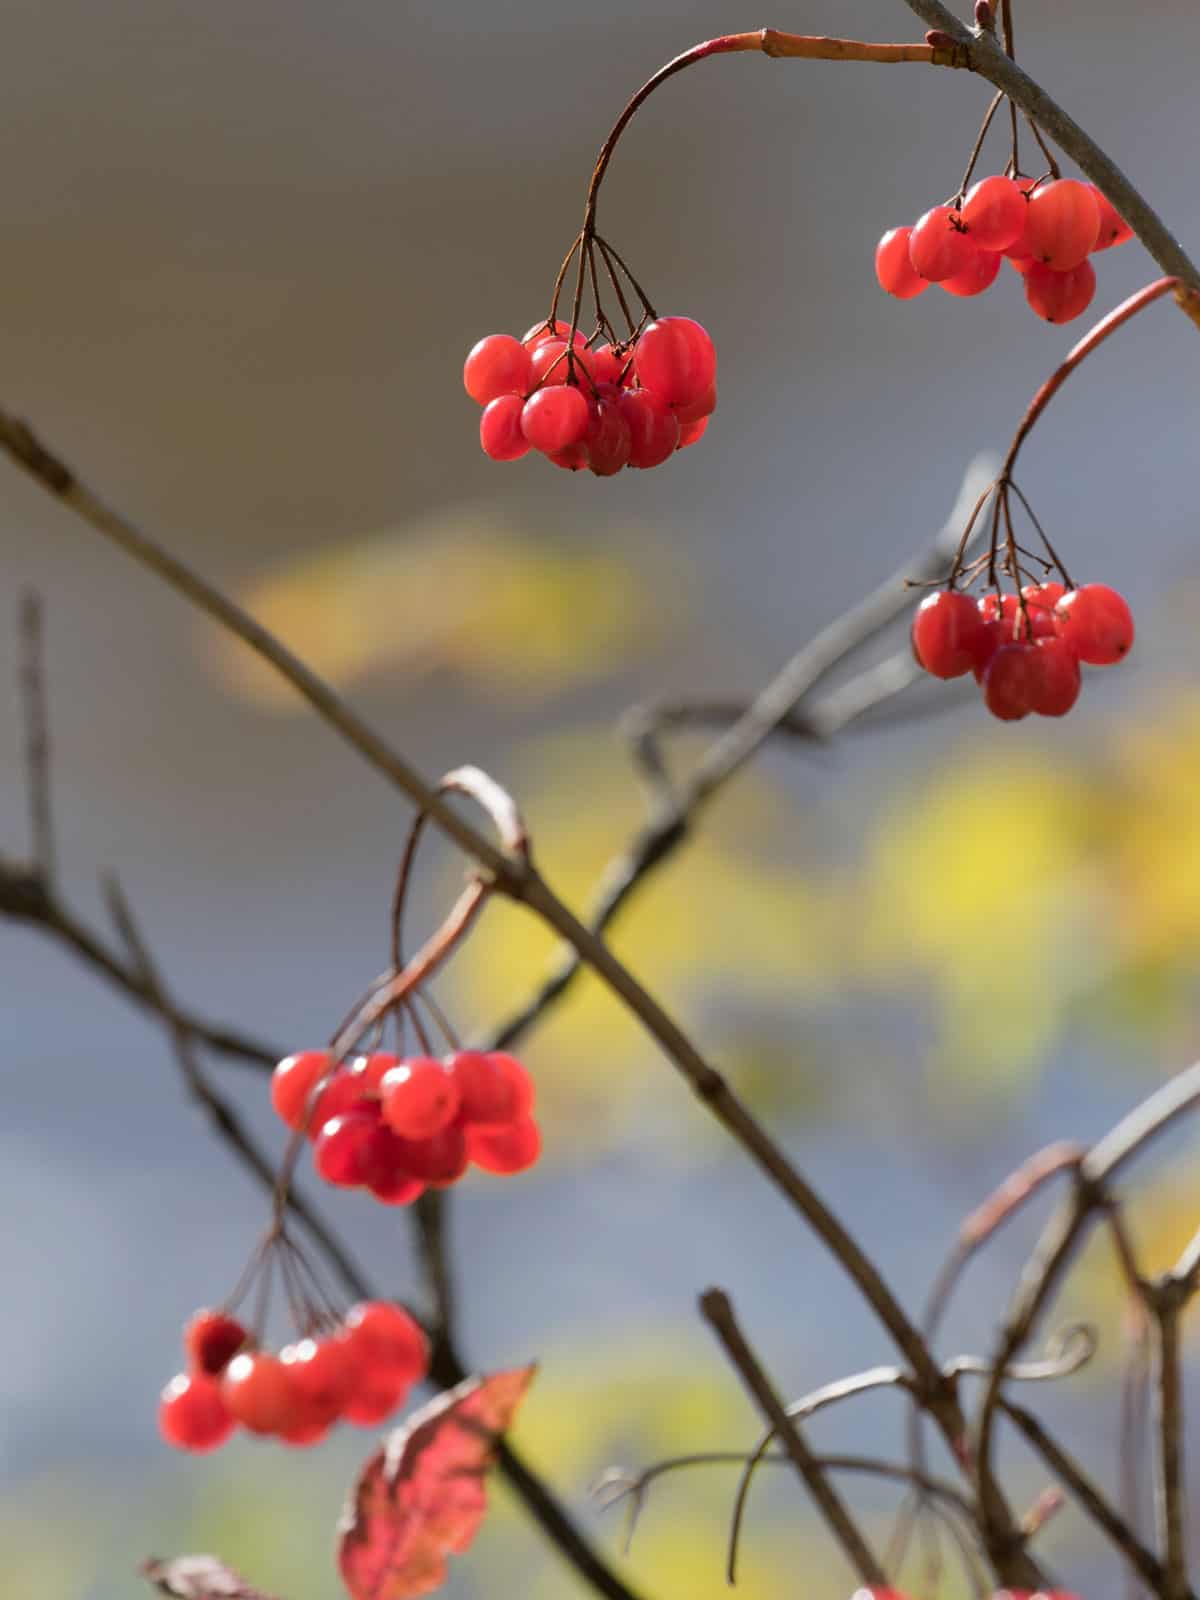 American Cranberrybush - Ripe red berries of American cranberrybush viburnum opulus in autumn